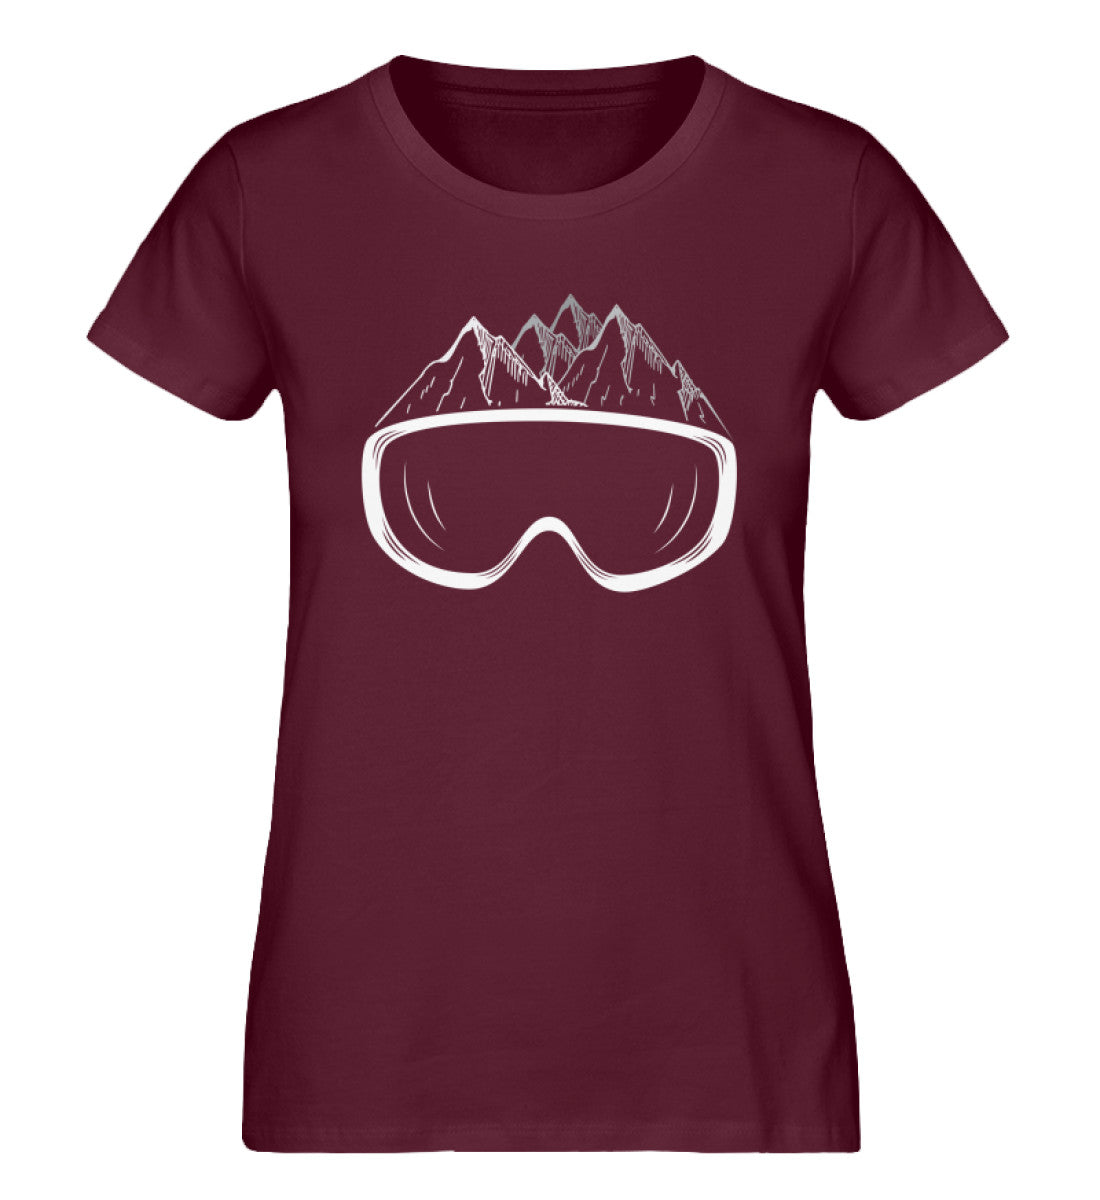 Wintersporteln - Damen Organic T-Shirt ski Weinrot